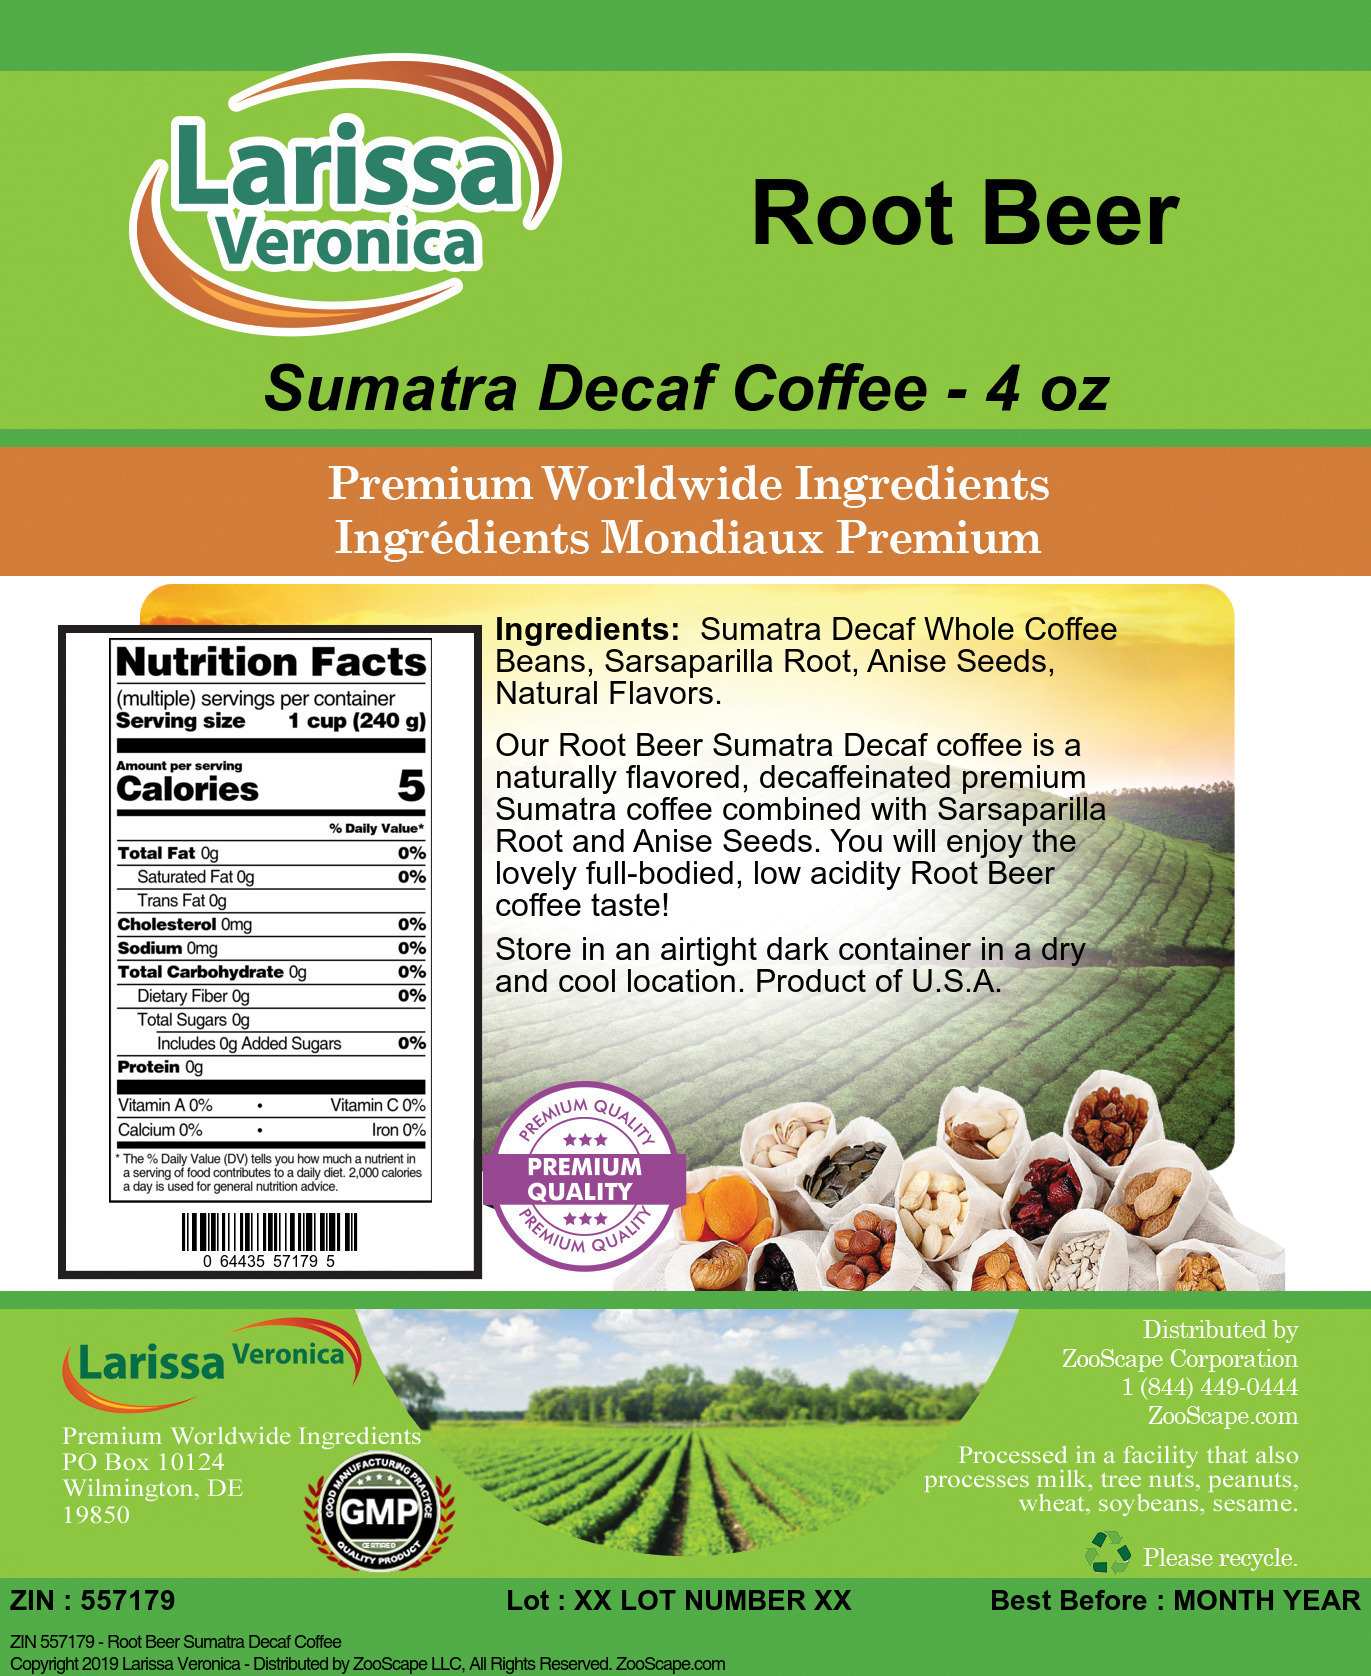 Root Beer Sumatra Decaf Coffee - Label